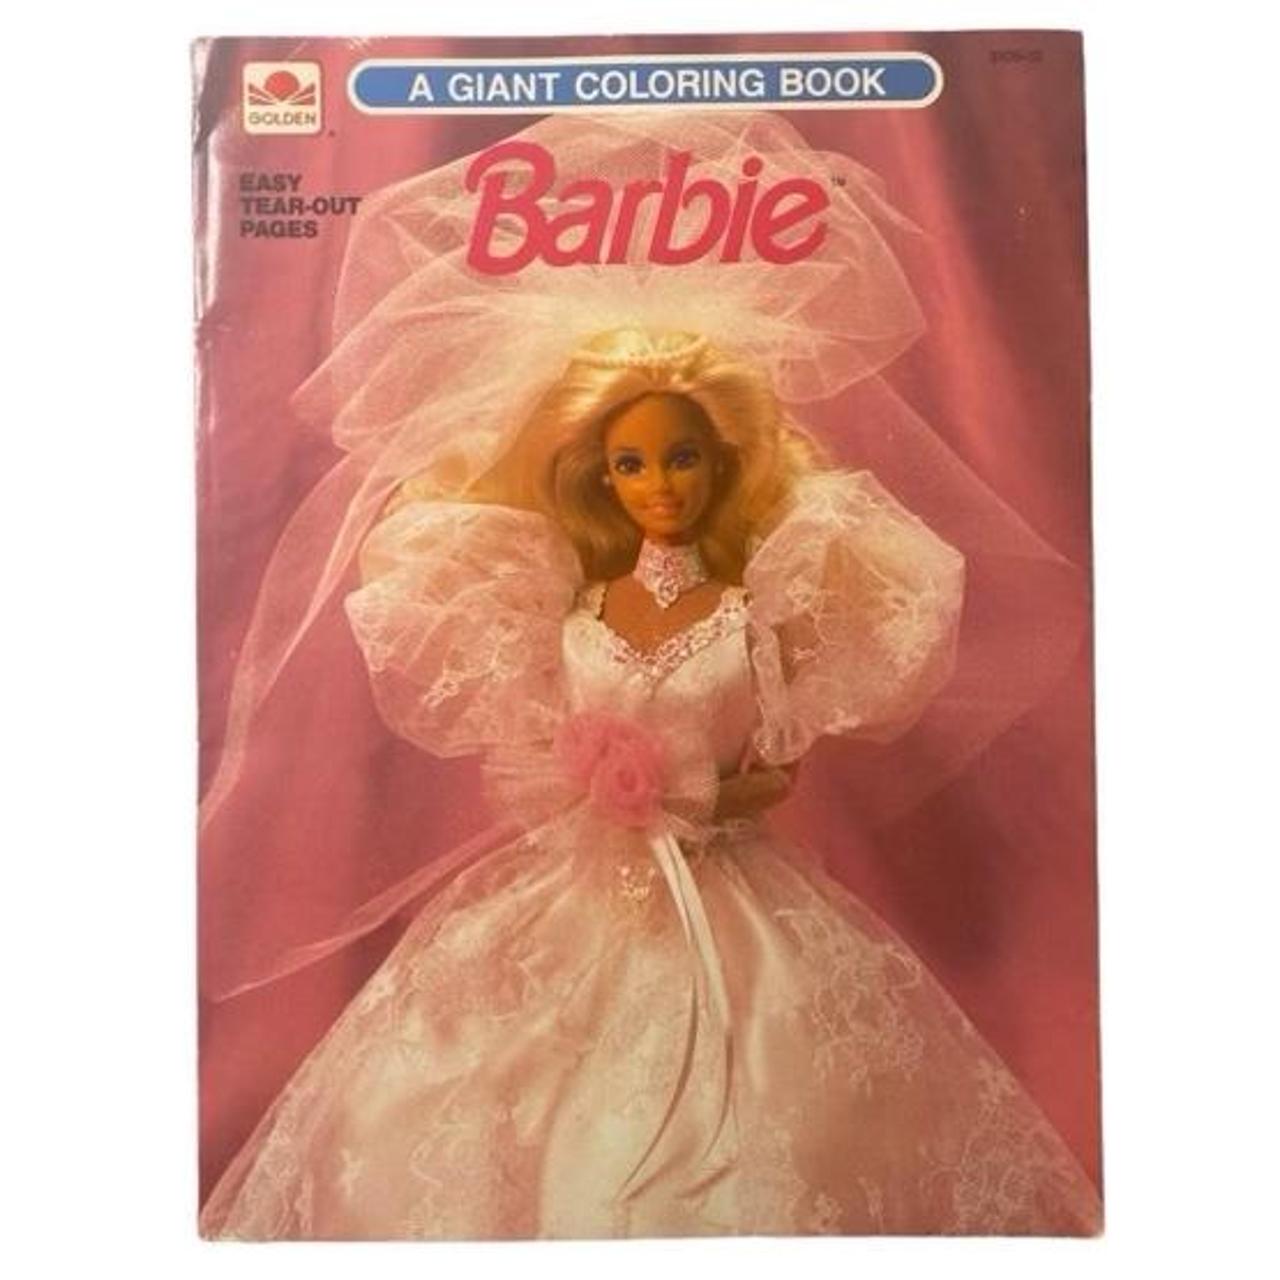 Vintage Barbie Coloring Book 8x11” #vintage - Depop